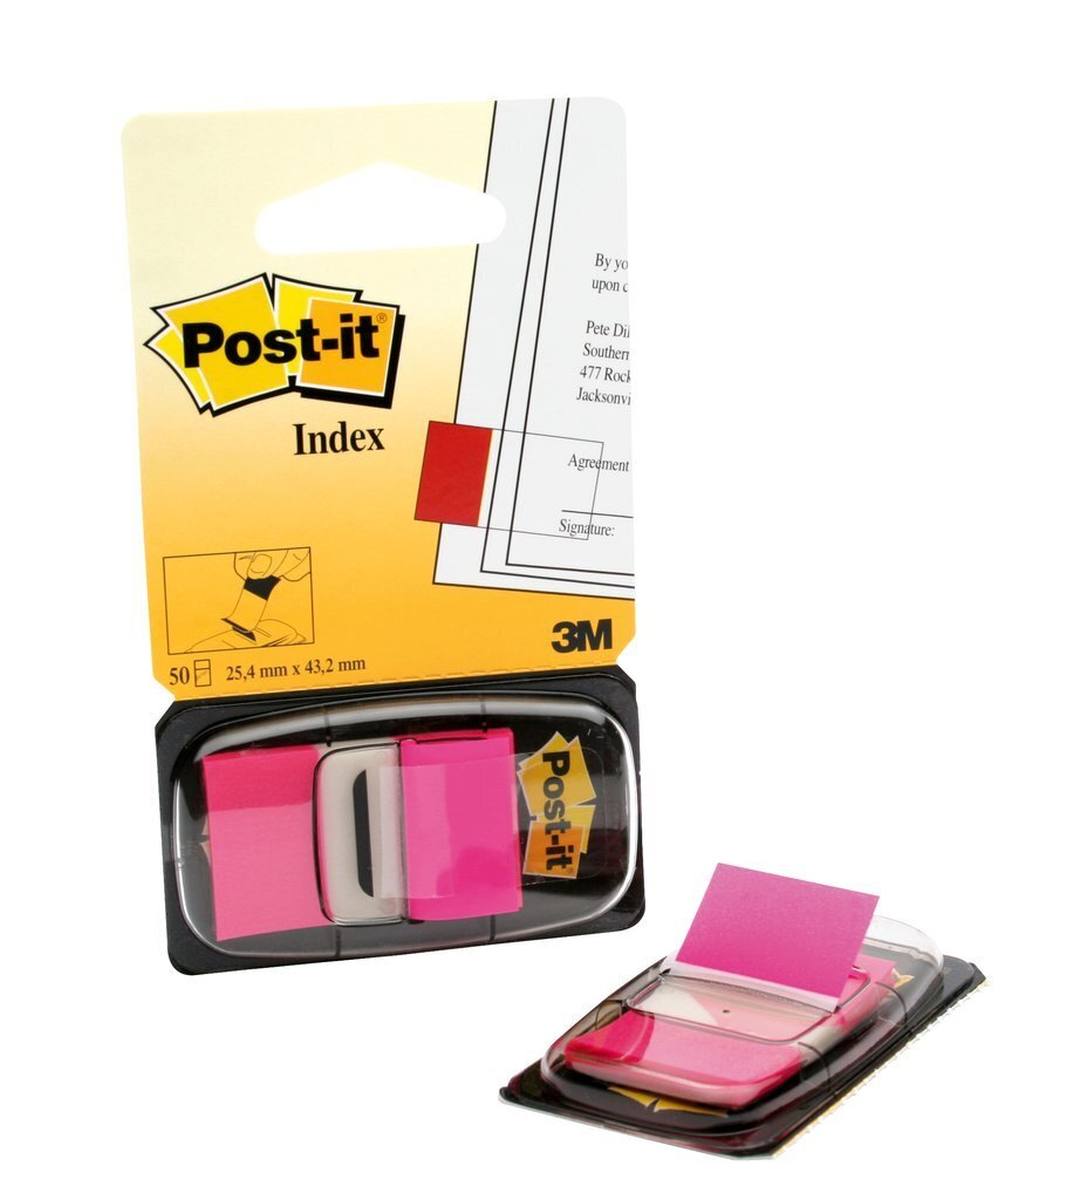 3M Post-it Index I680-21, 25,4 mm x 43,2 mm, rosa, 1 x 50 tiras adhesivas en dispensador